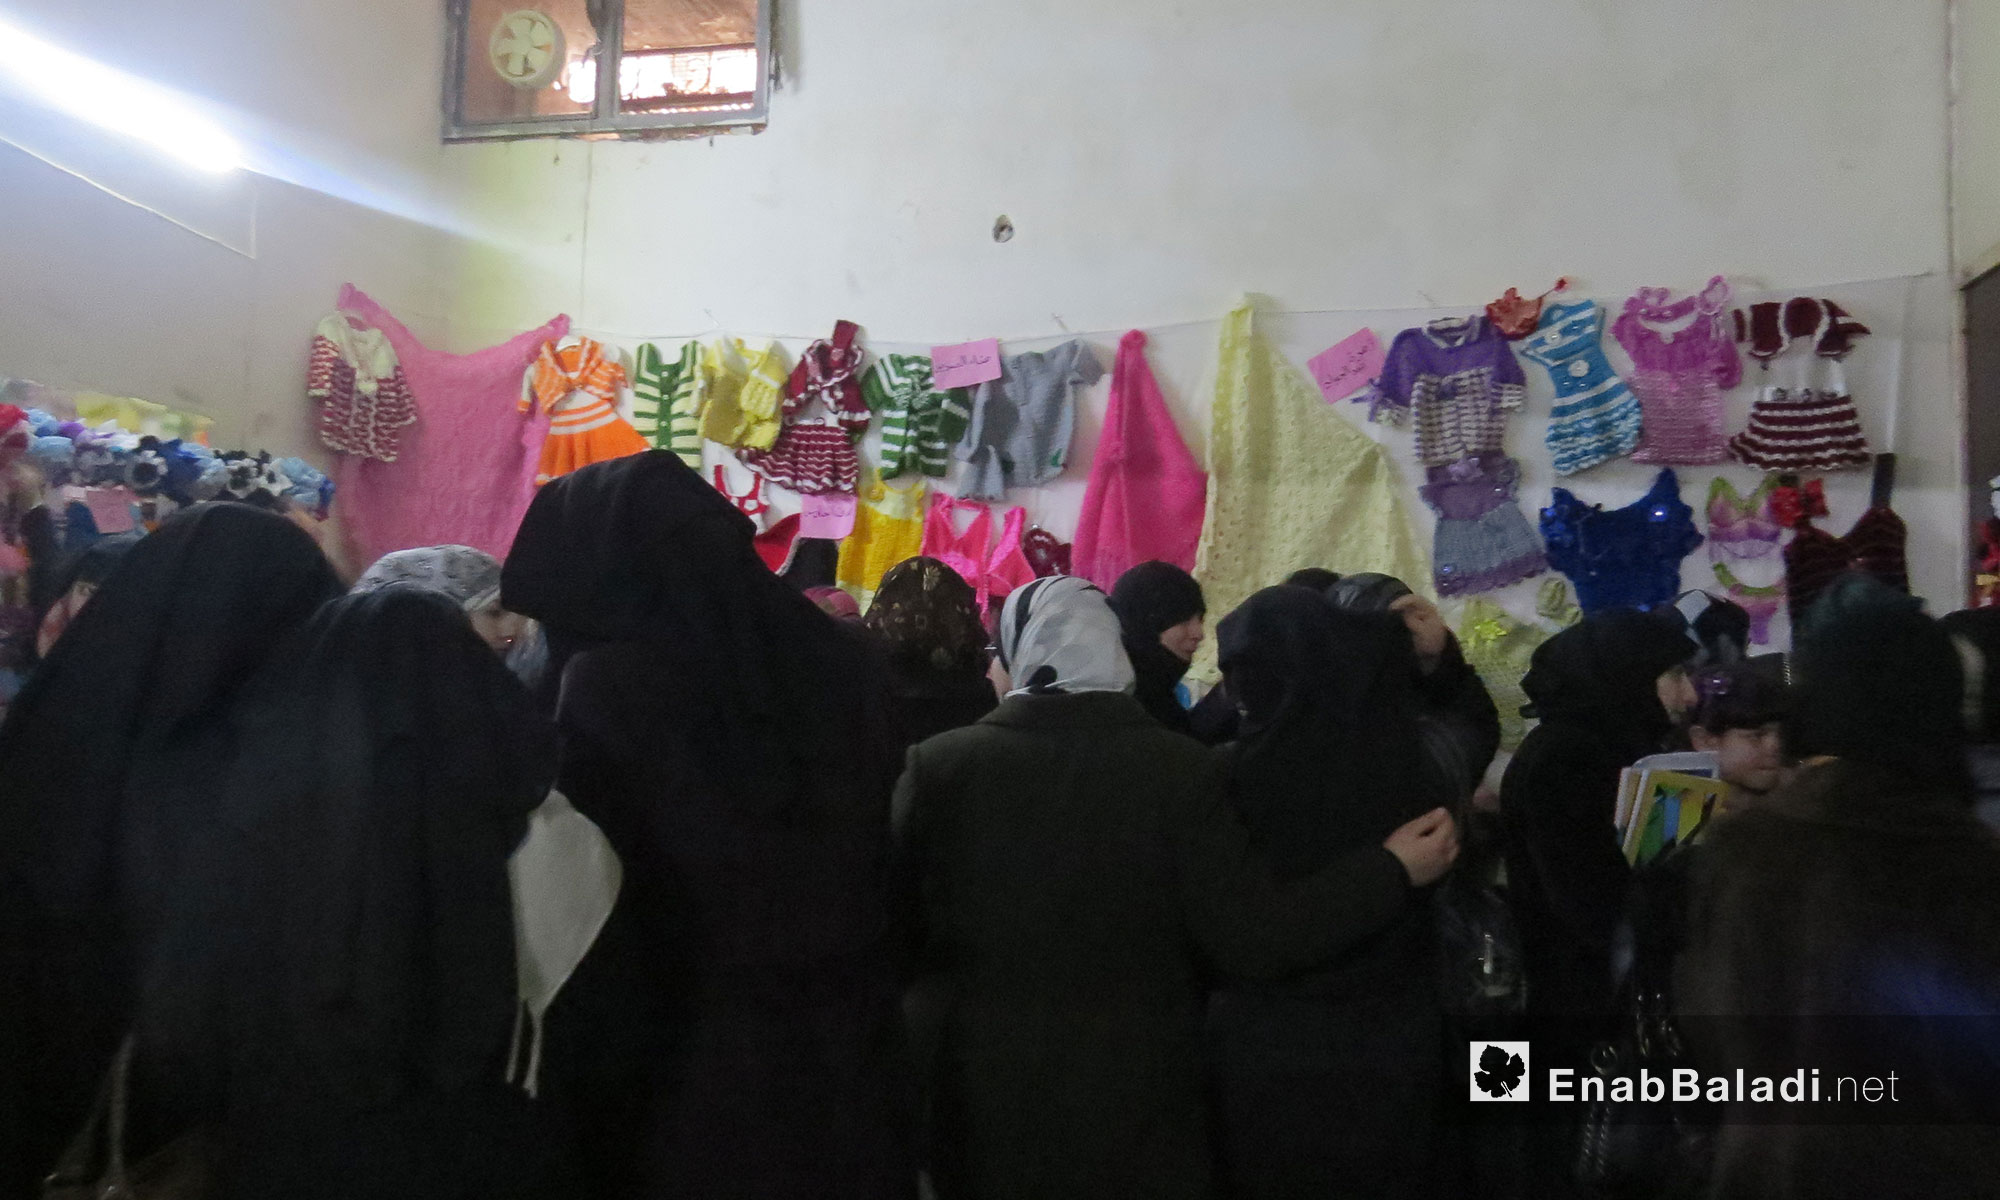 معرض لأعمال الصوف والرسم  لمركز "النساء الآن" في معرة النعمان - 12 شباط 2017 (عنب بلدي)